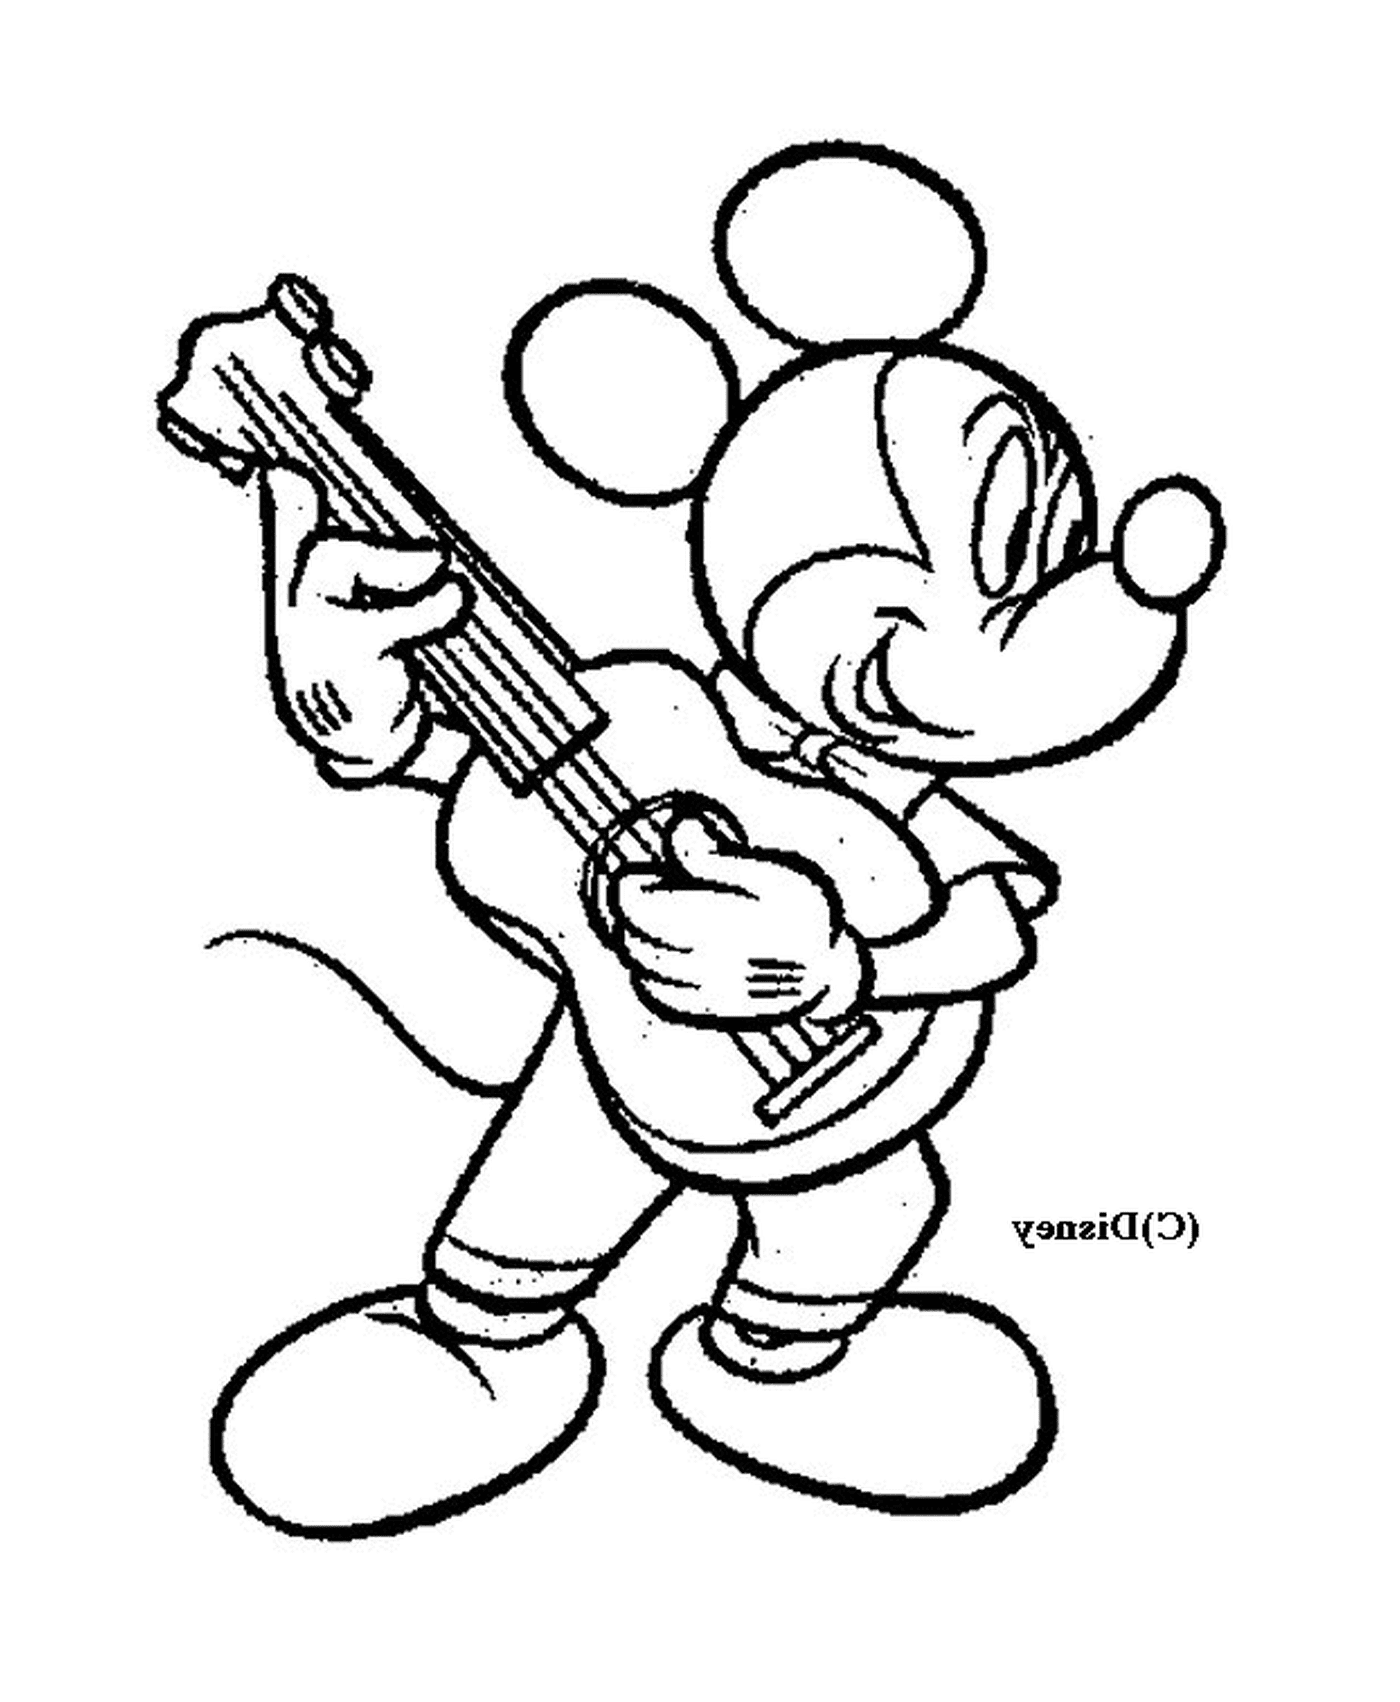  Mickey toca la guitarra: Mickey Mouse tocando la guitarra 